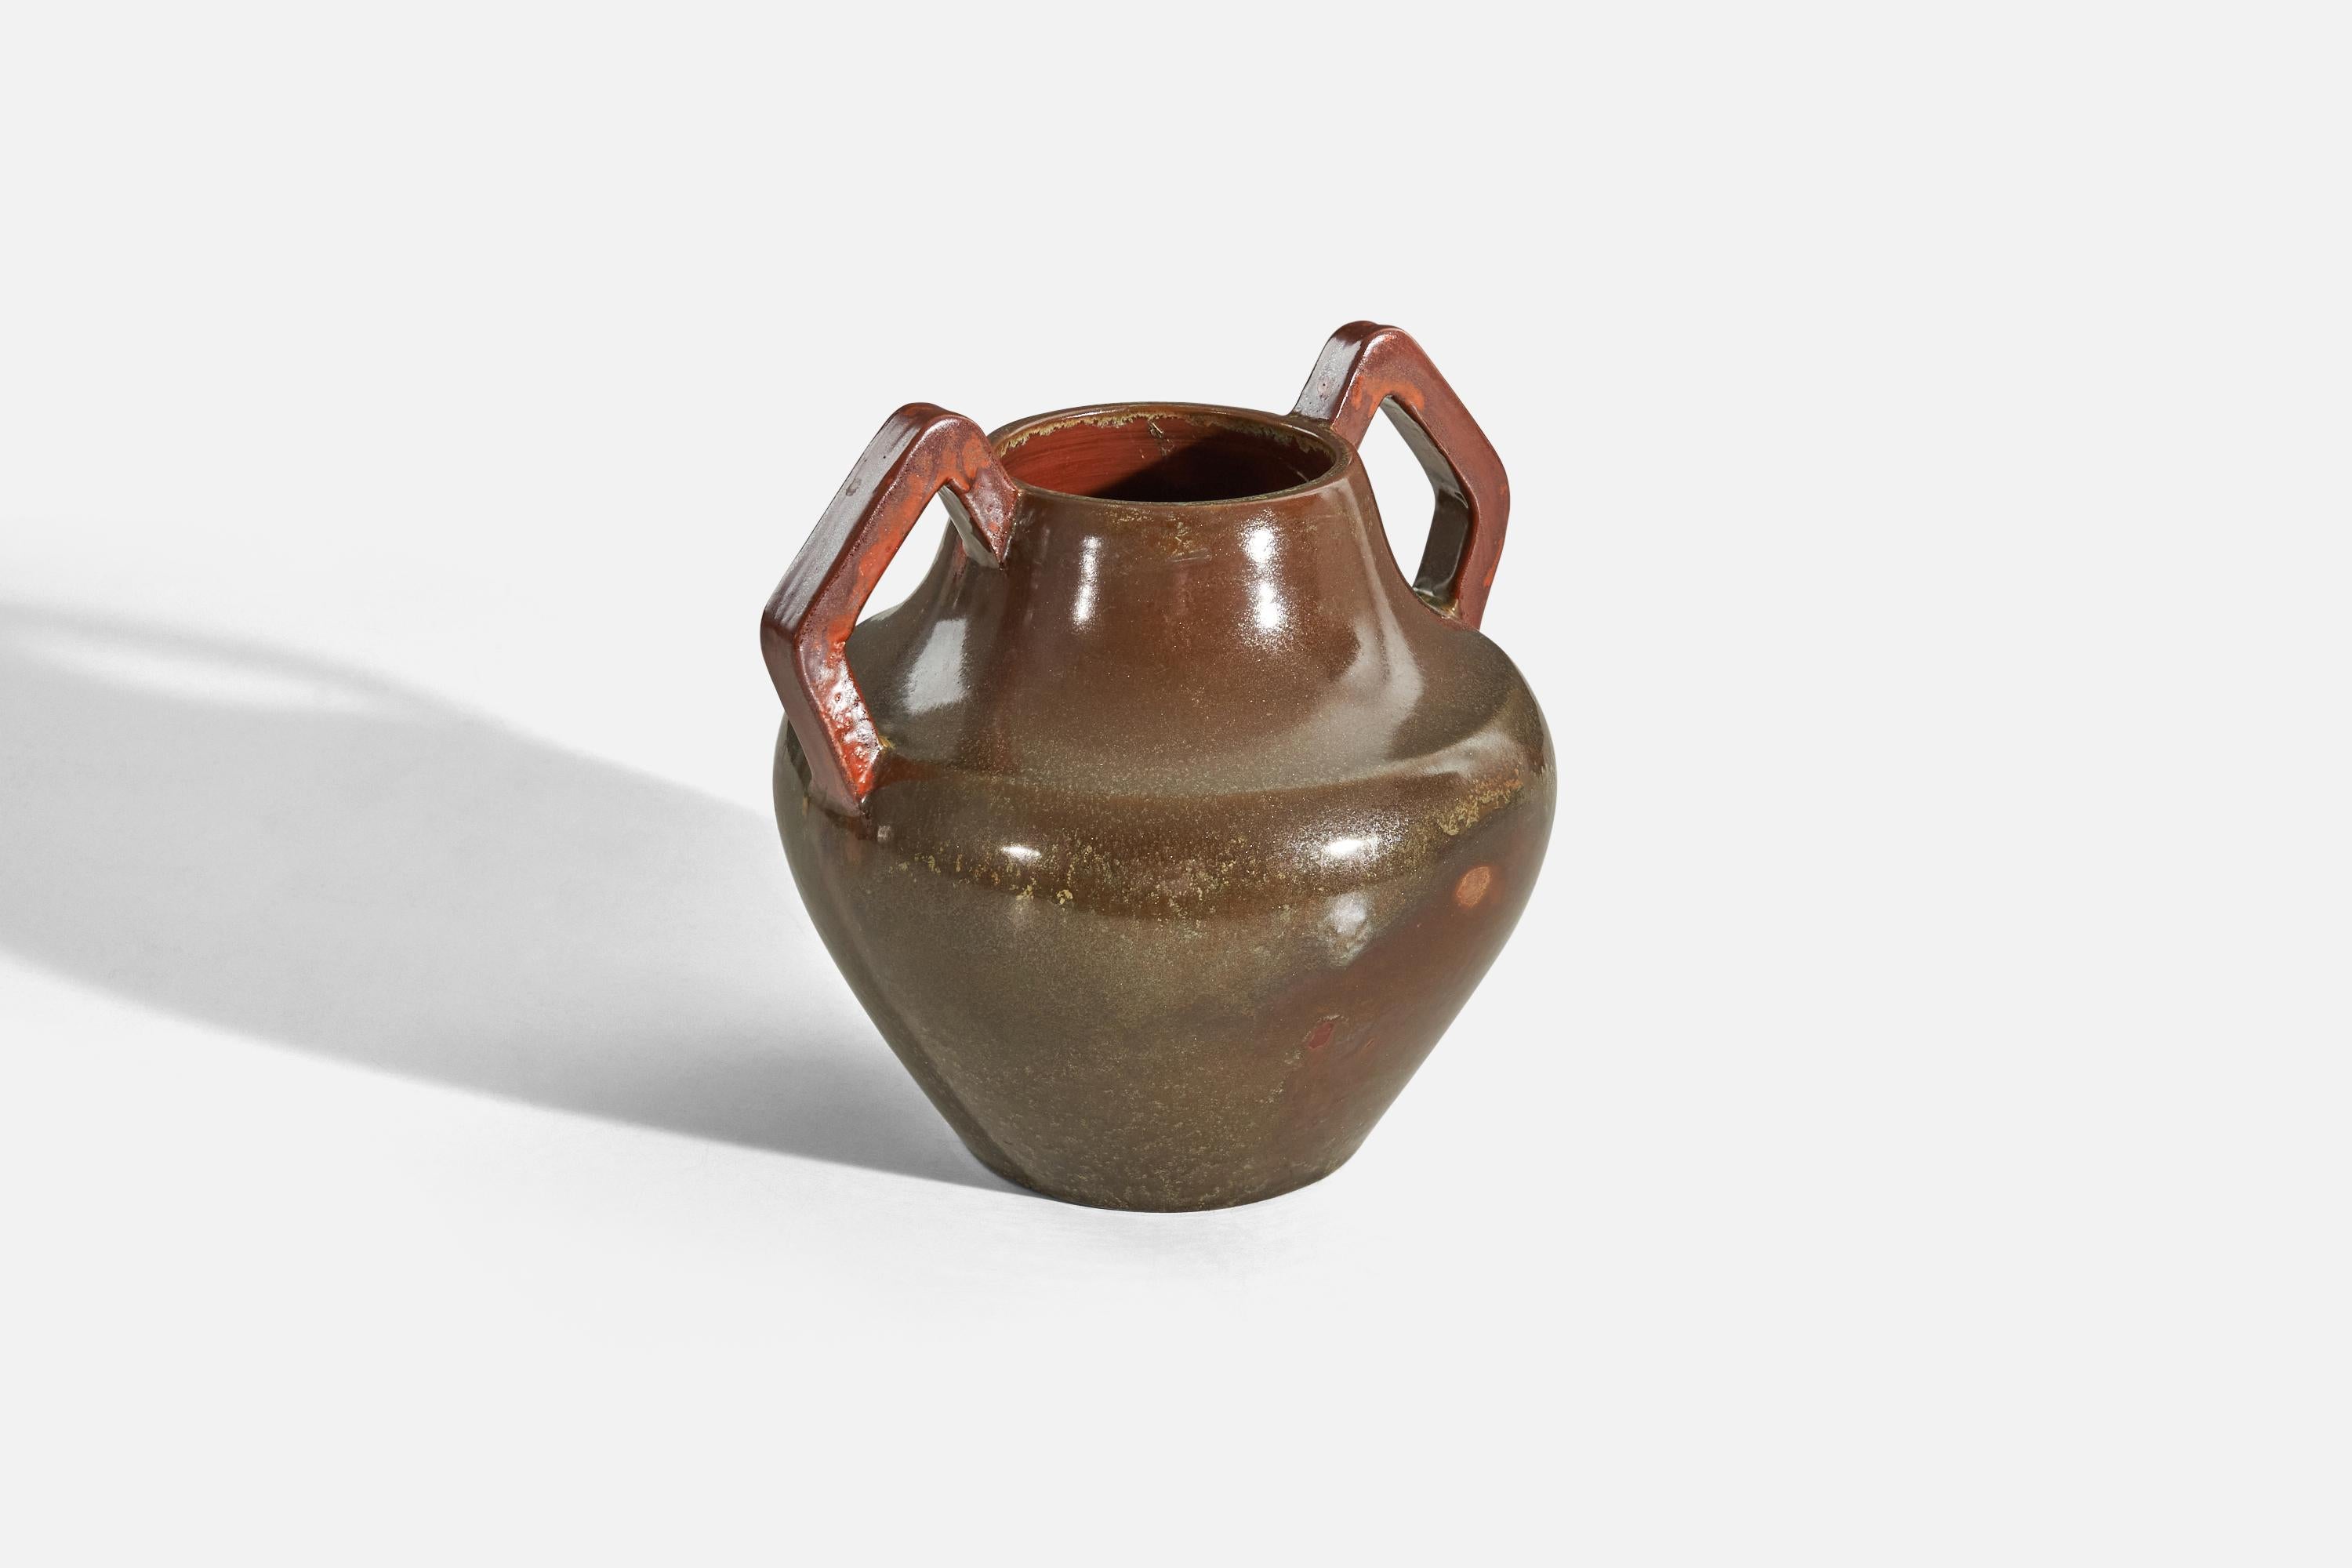 Scandinavian Modern Nyman & Nyman, Vase, Brown Glazed Stoneware, Höganäs, Sweden 1940s For Sale